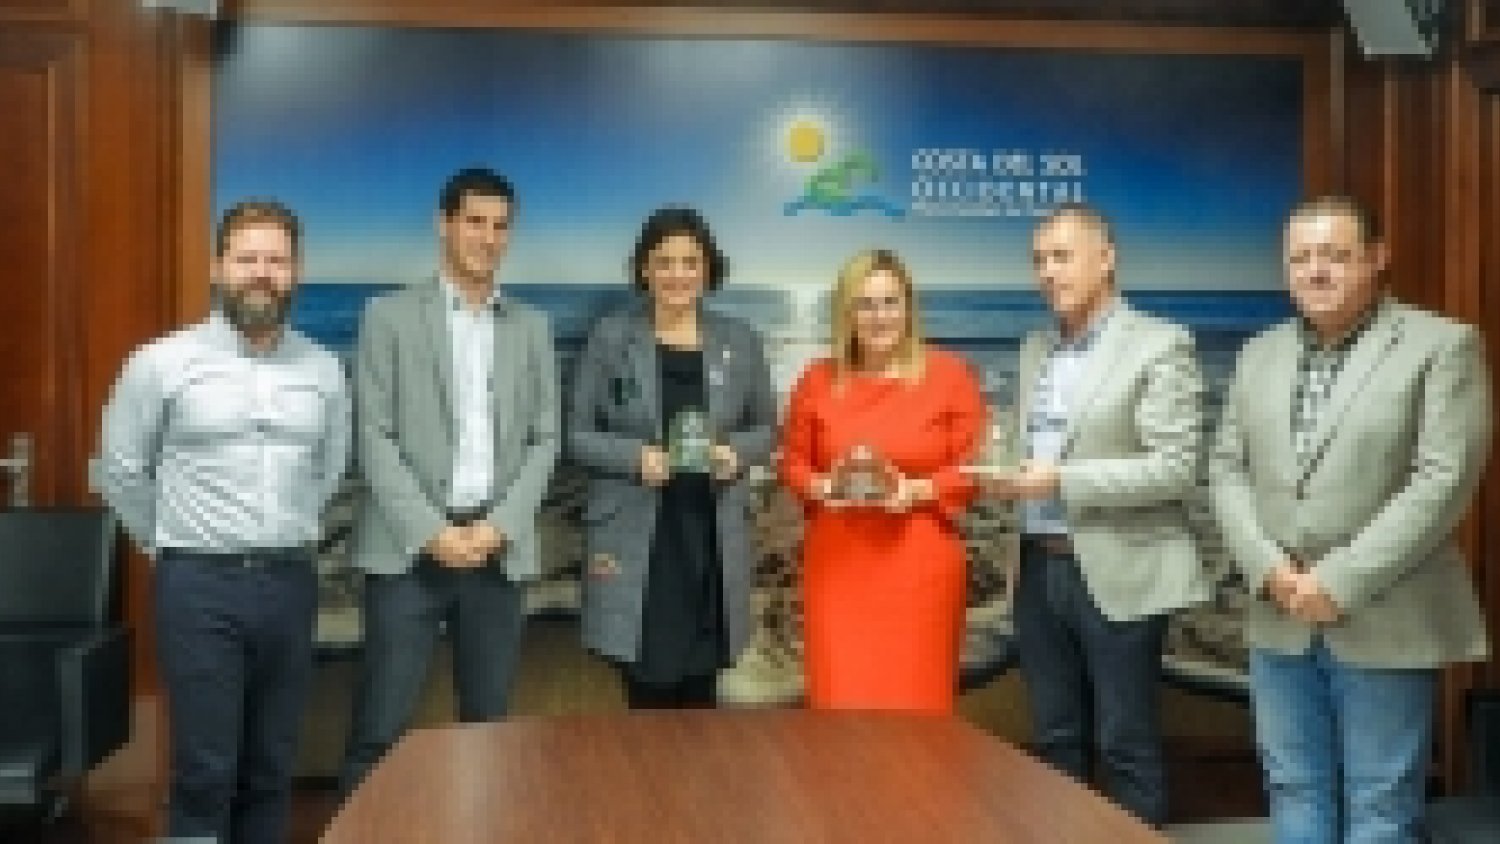 Fuengirola, Manilva y Casares, premio “iglú verde” por sus altos niveles de recogida de vidrio